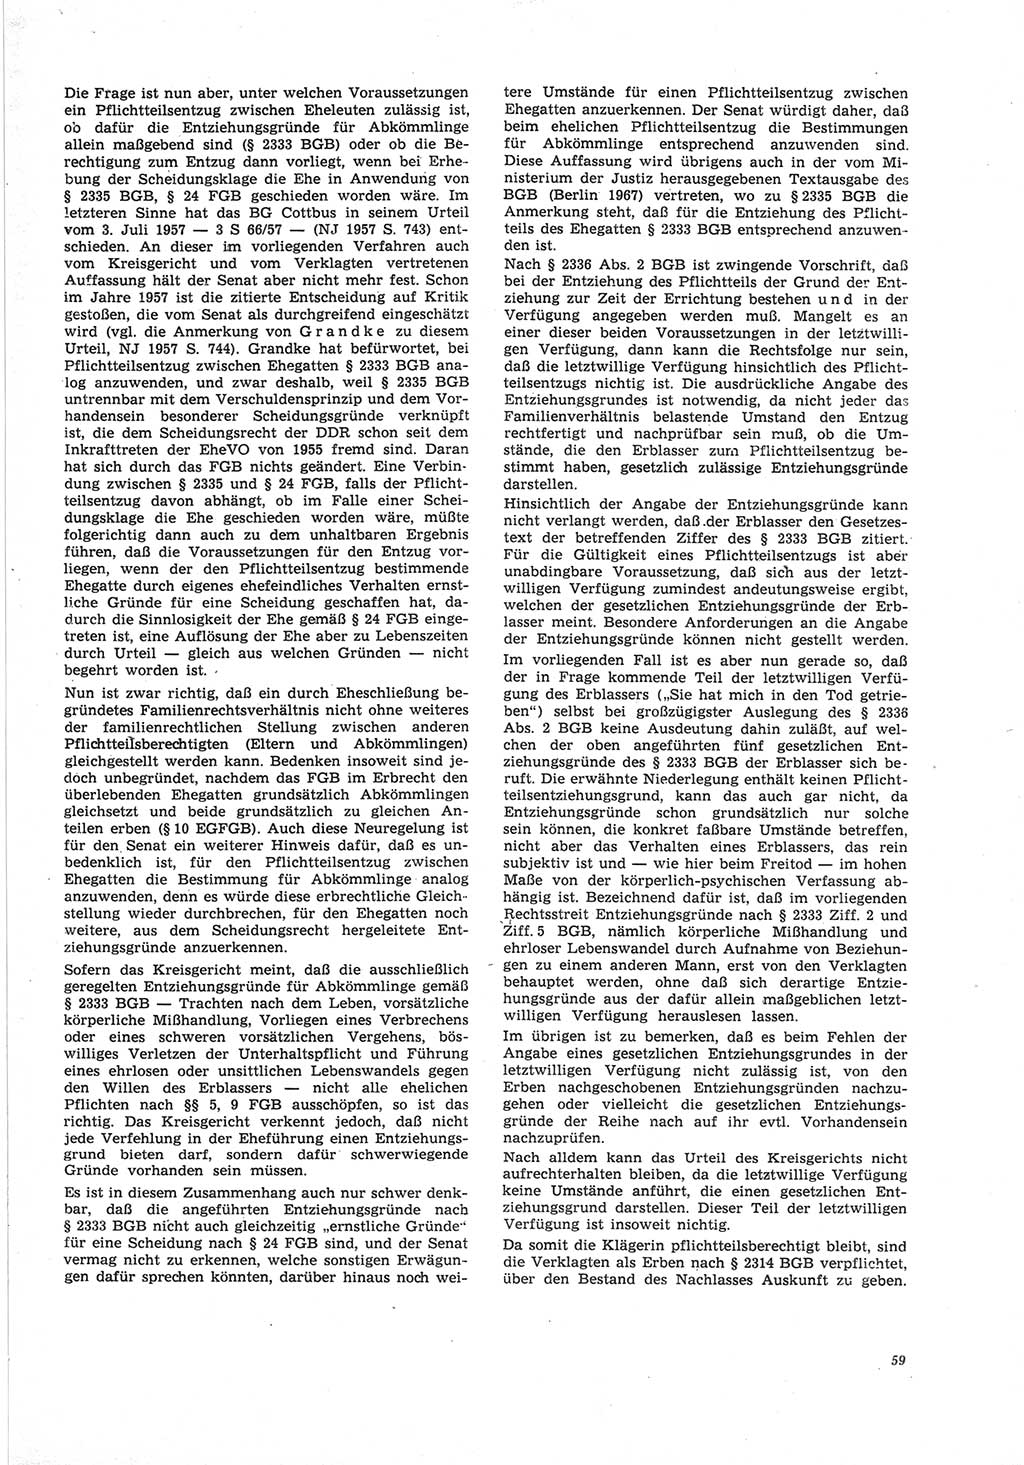 Neue Justiz (NJ), Zeitschrift für Recht und Rechtswissenschaft [Deutsche Demokratische Republik (DDR)], 25. Jahrgang 1971, Seite 59 (NJ DDR 1971, S. 59)